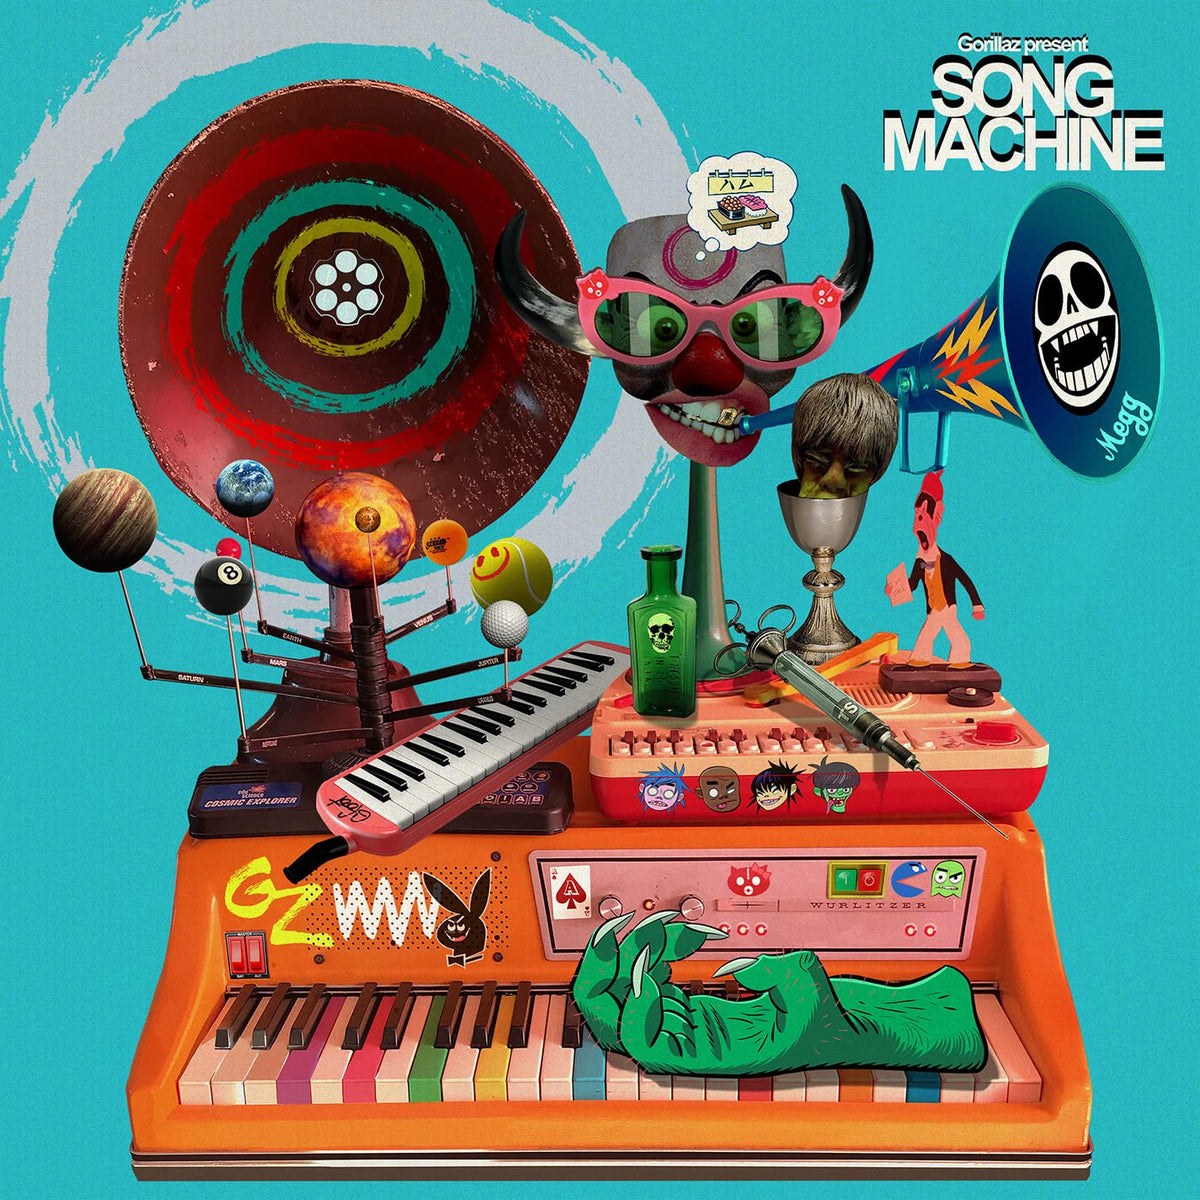 Gorillaz - Song Machine Season One LP